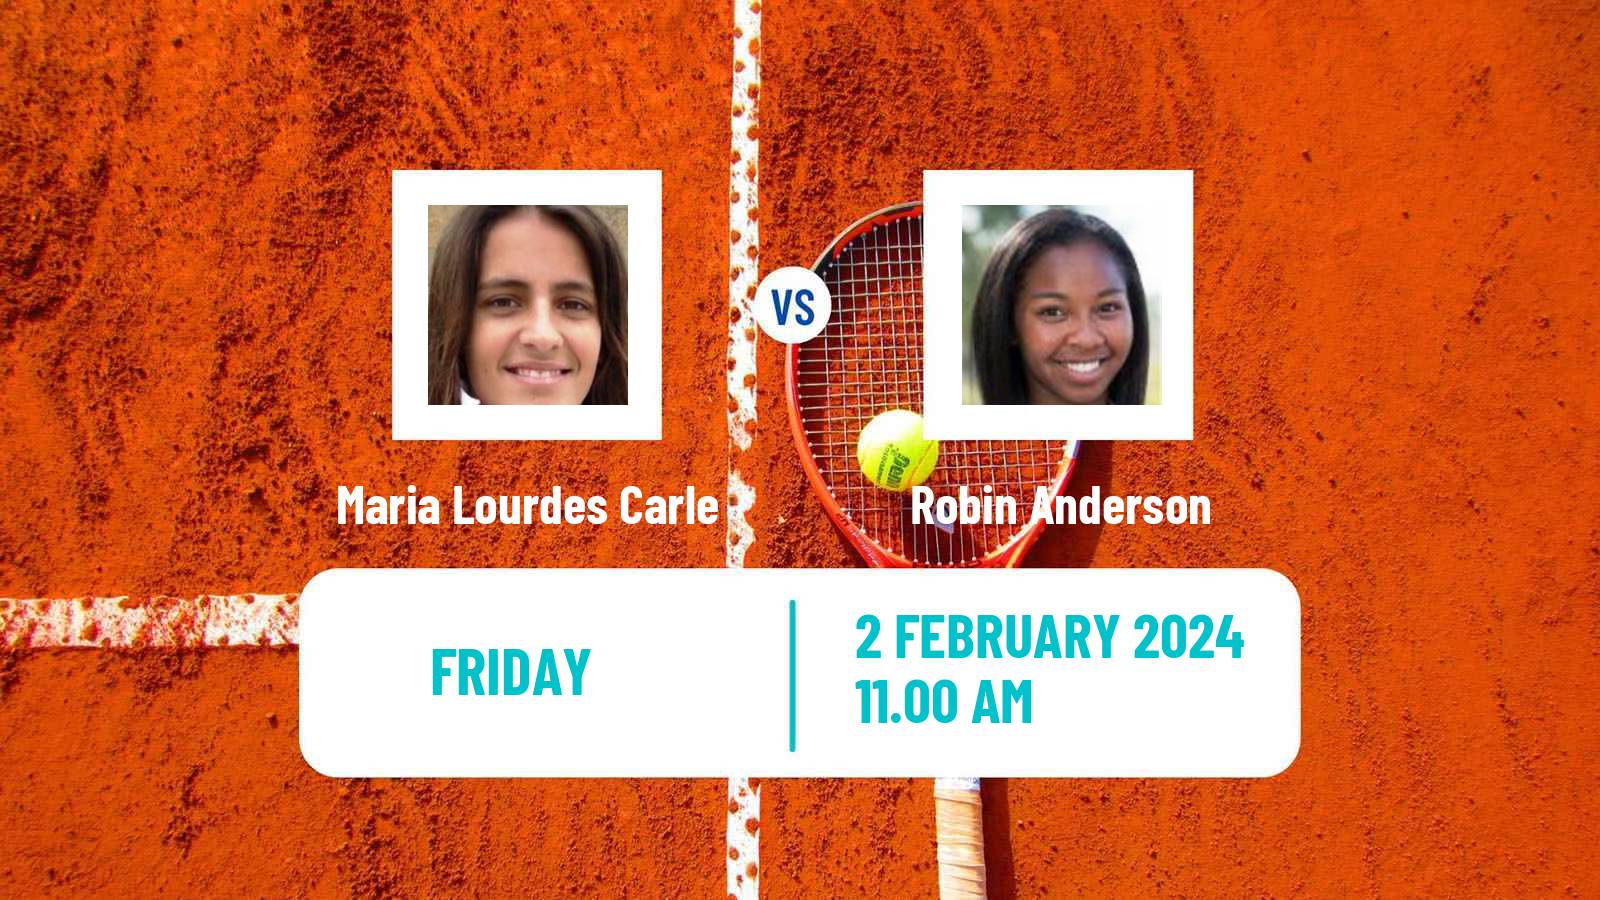 Tennis ITF W75 Rome Ga Women Maria Lourdes Carle - Robin Anderson